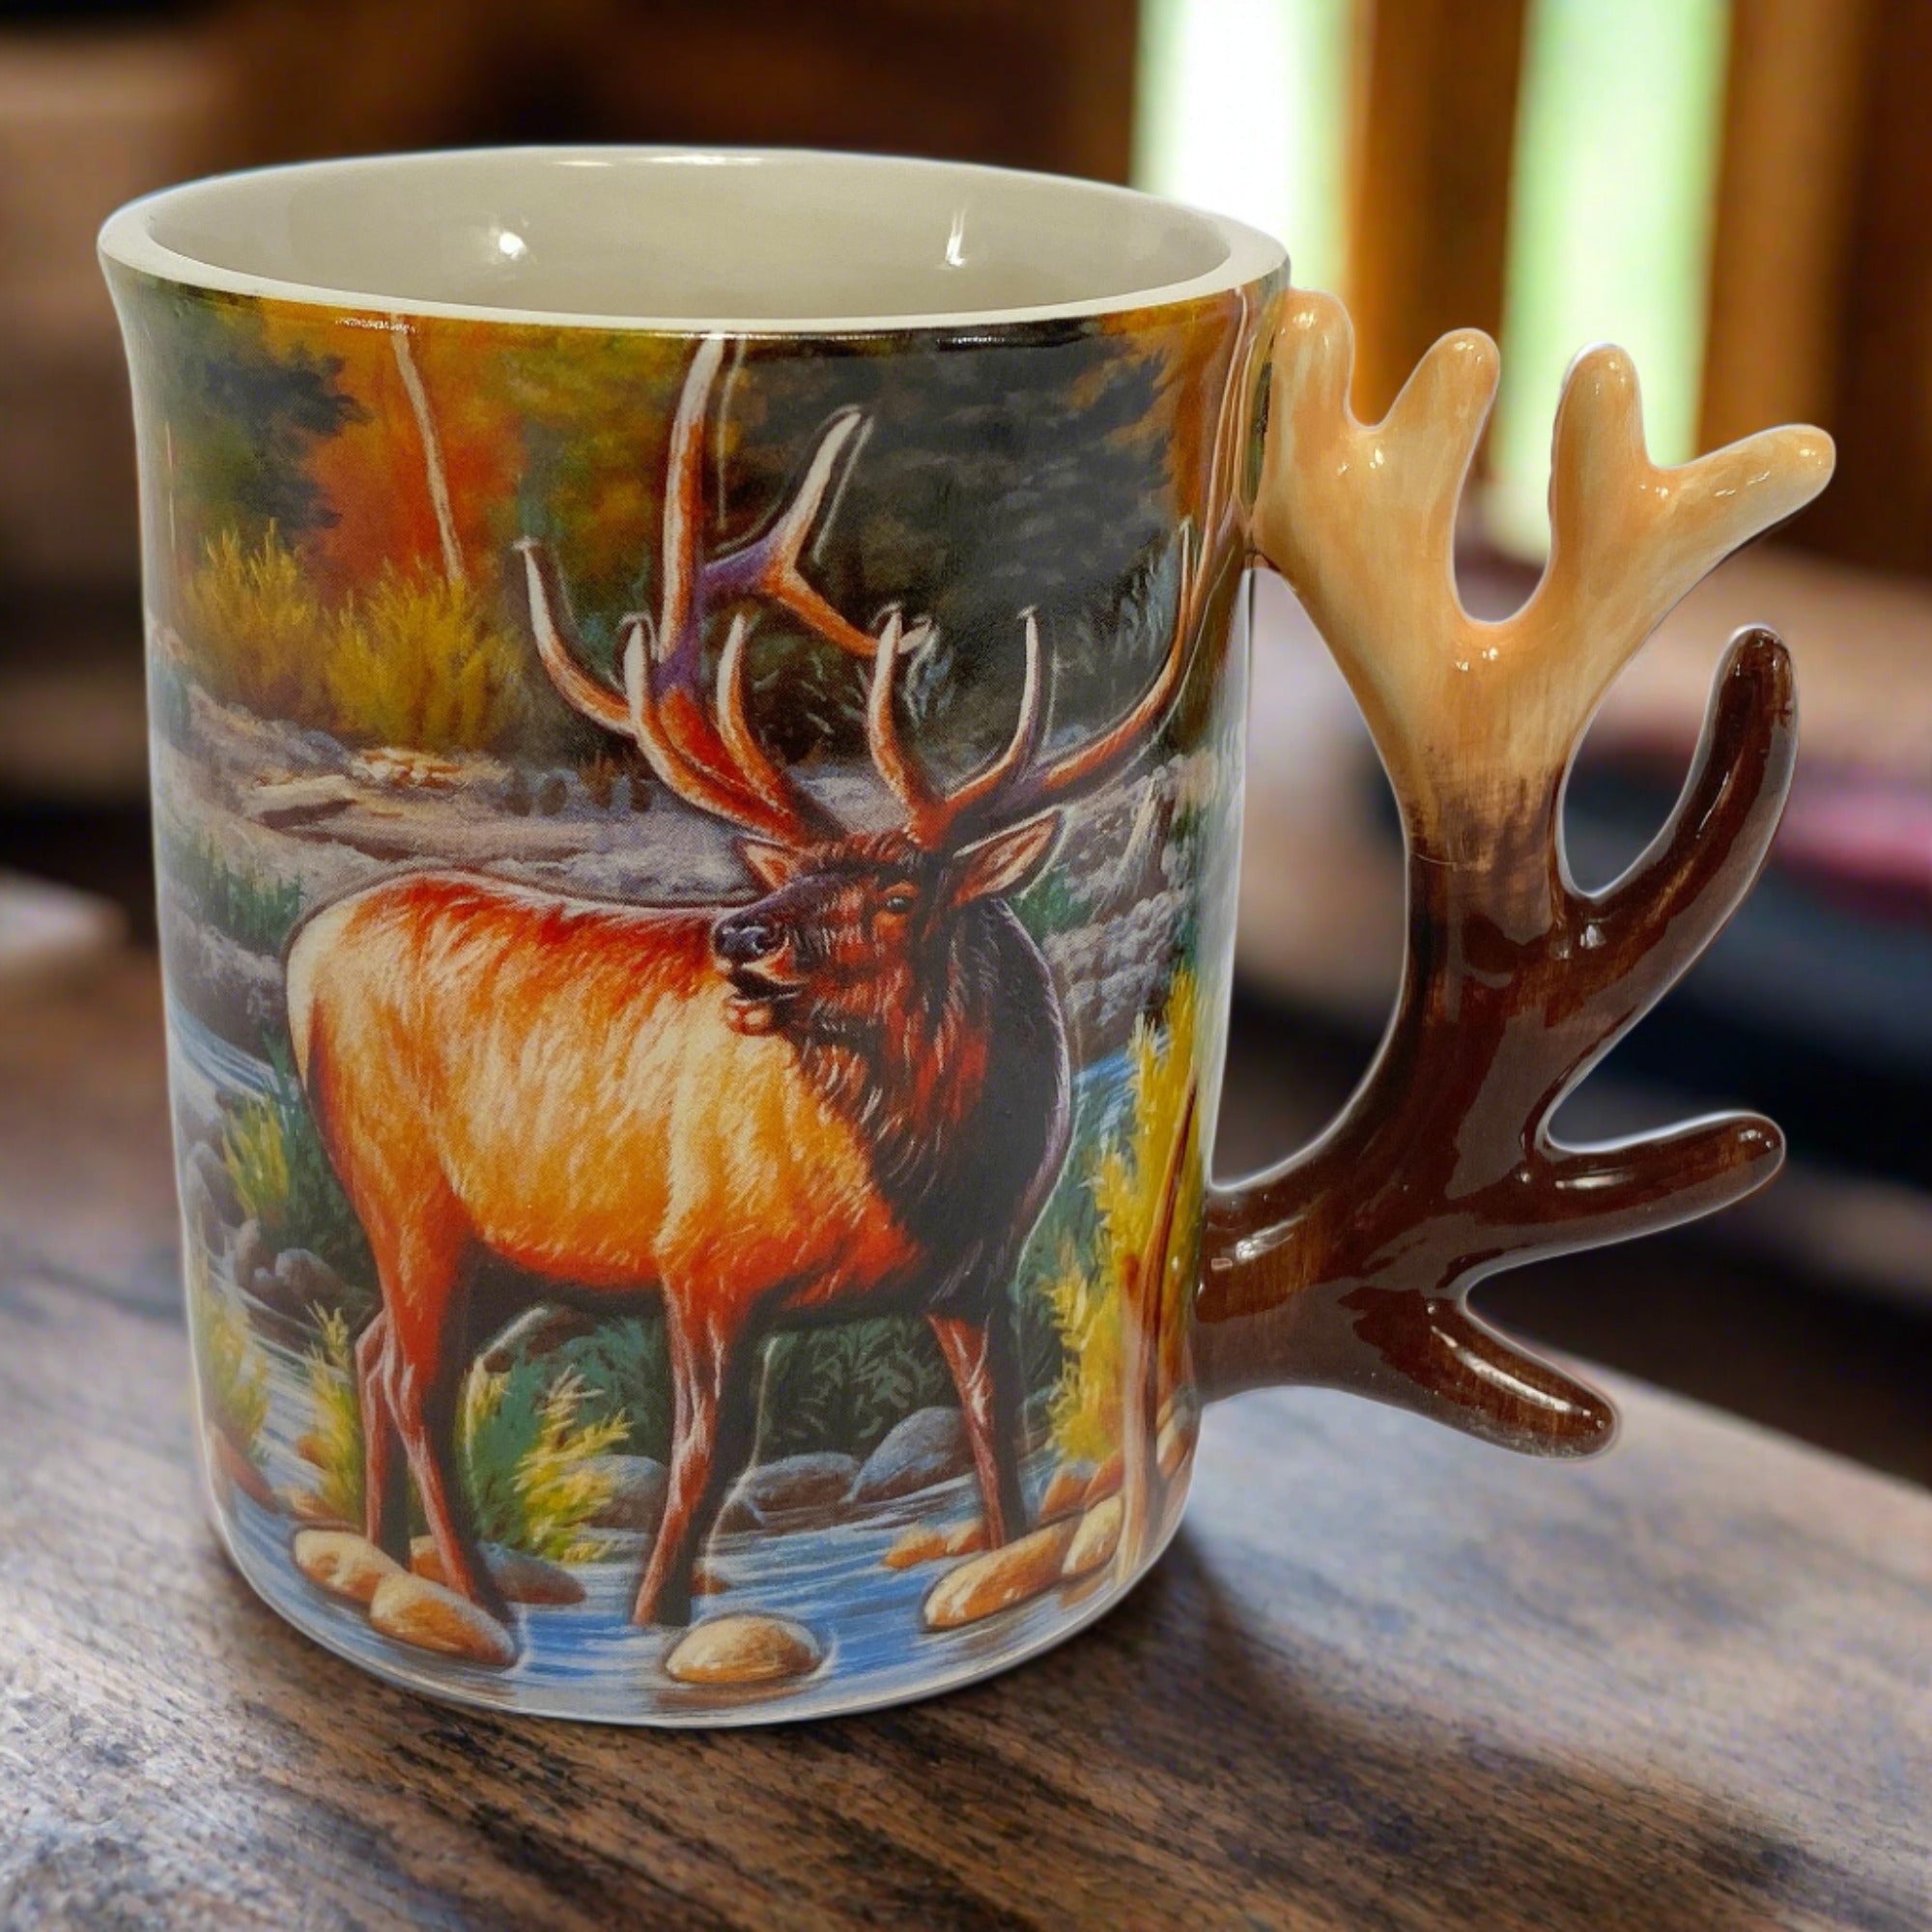 Majestic Elk gift-boxed mug